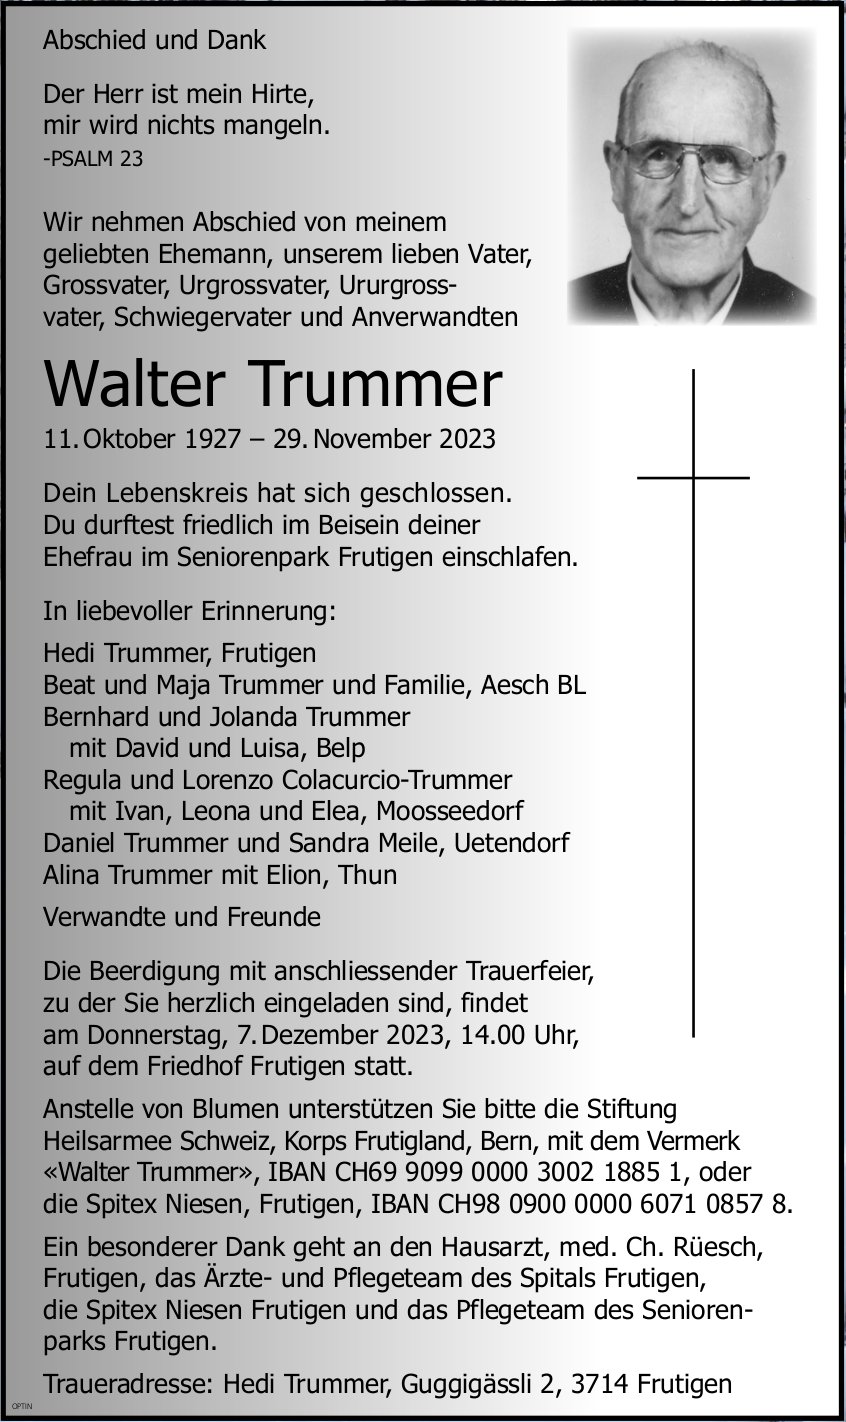 Walter Trummer, November 2023 / TA